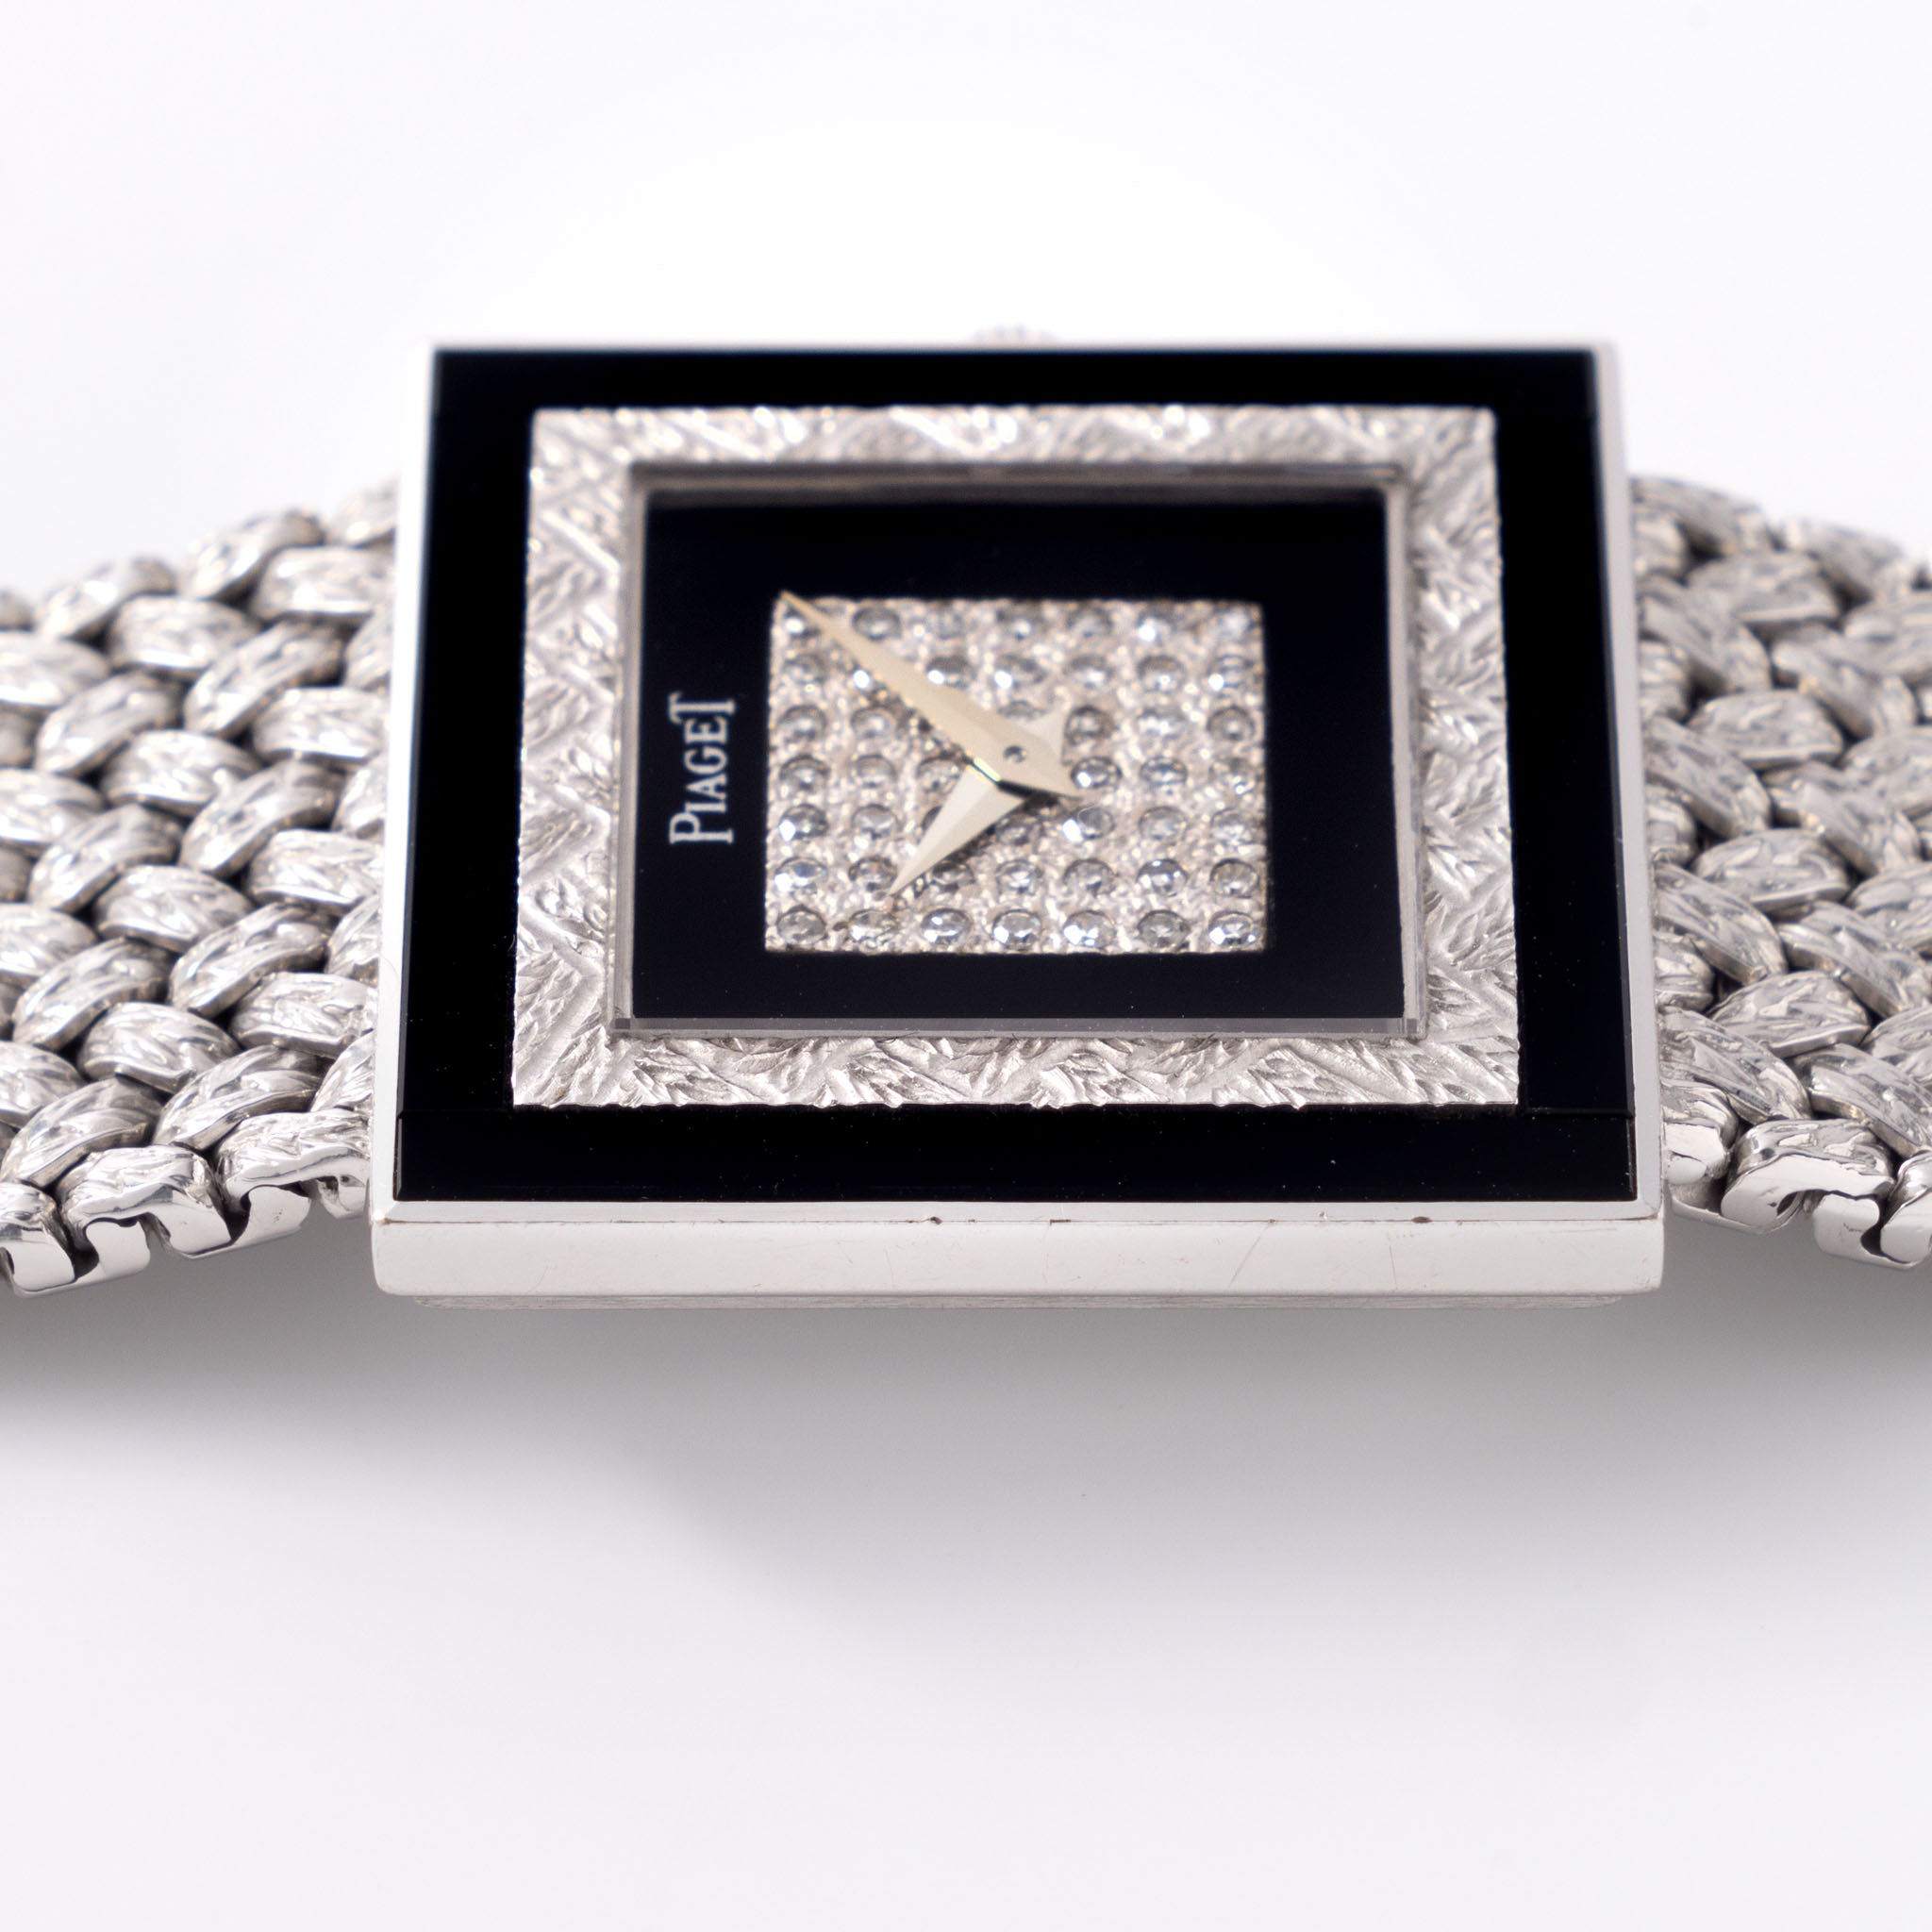 Piaget Altipiano Weiẞgold mit Diamanten und Onyx besetztem Zifferblatt mit Box und Papieren Referenz 9200